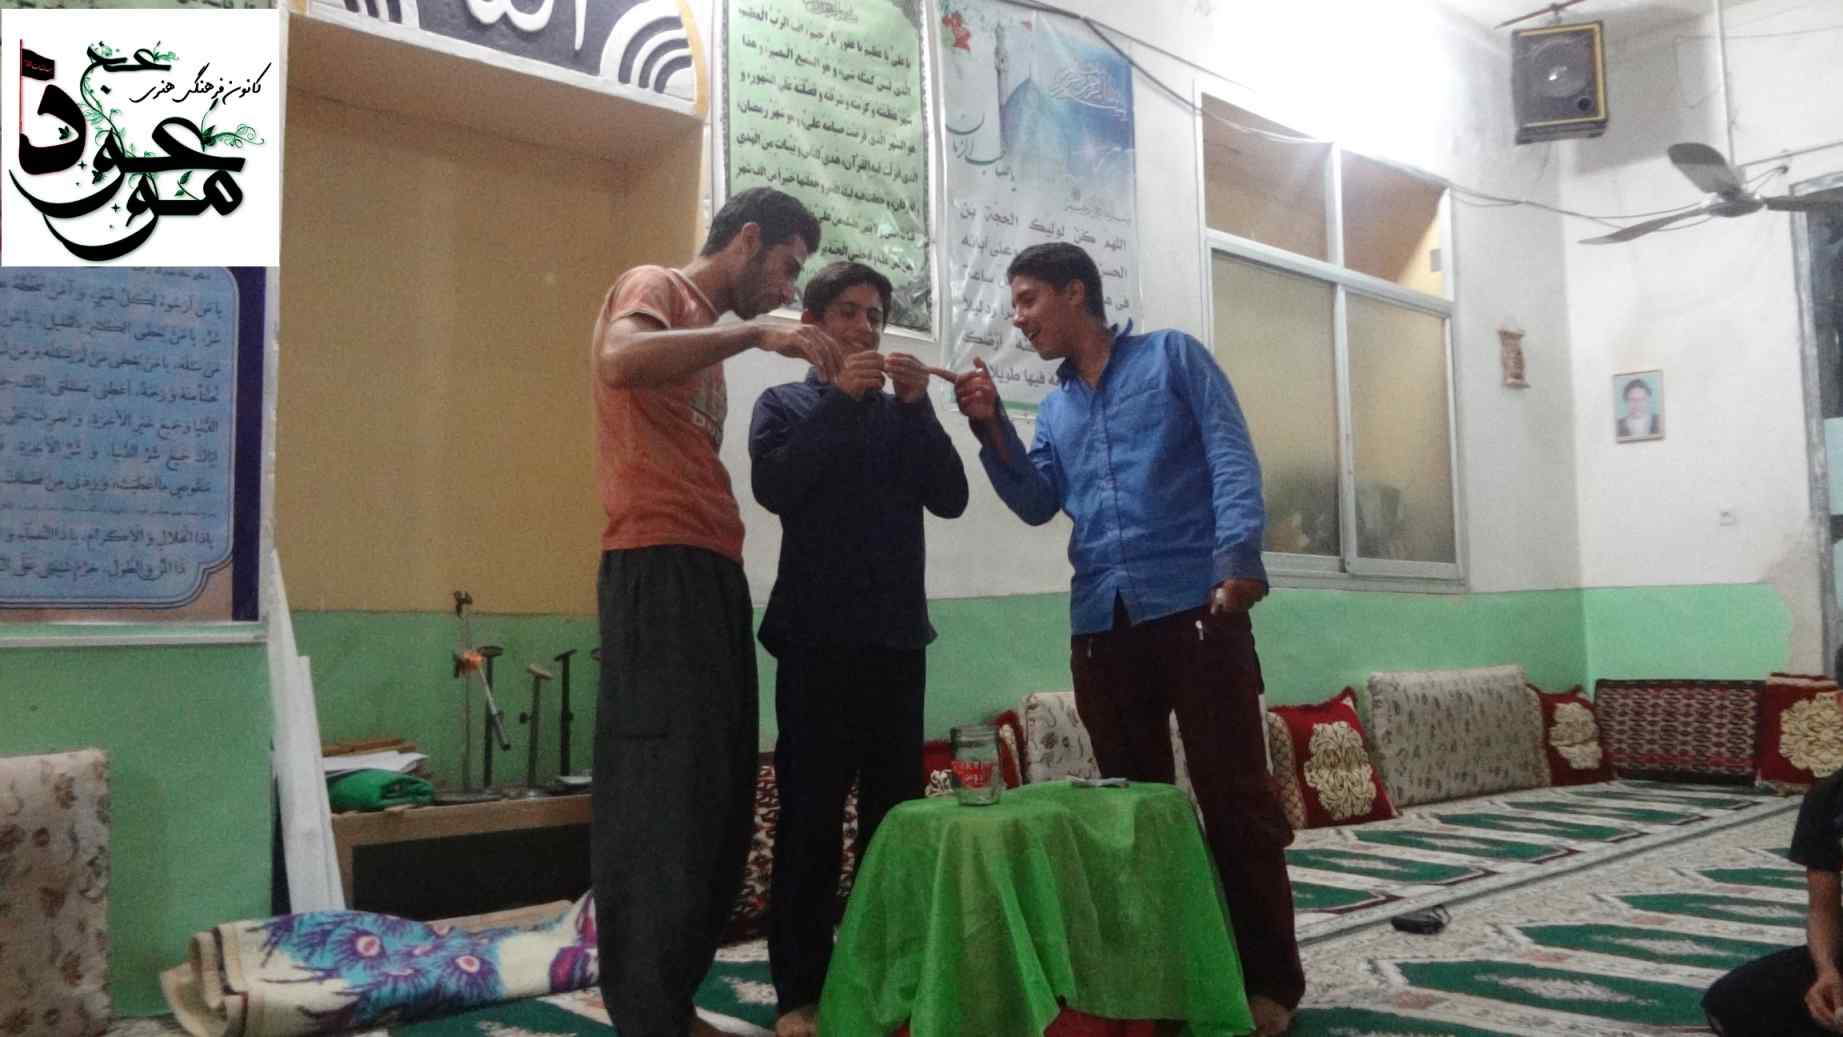 قرعه کشی مسابقات تابلو اعلانات مسجد